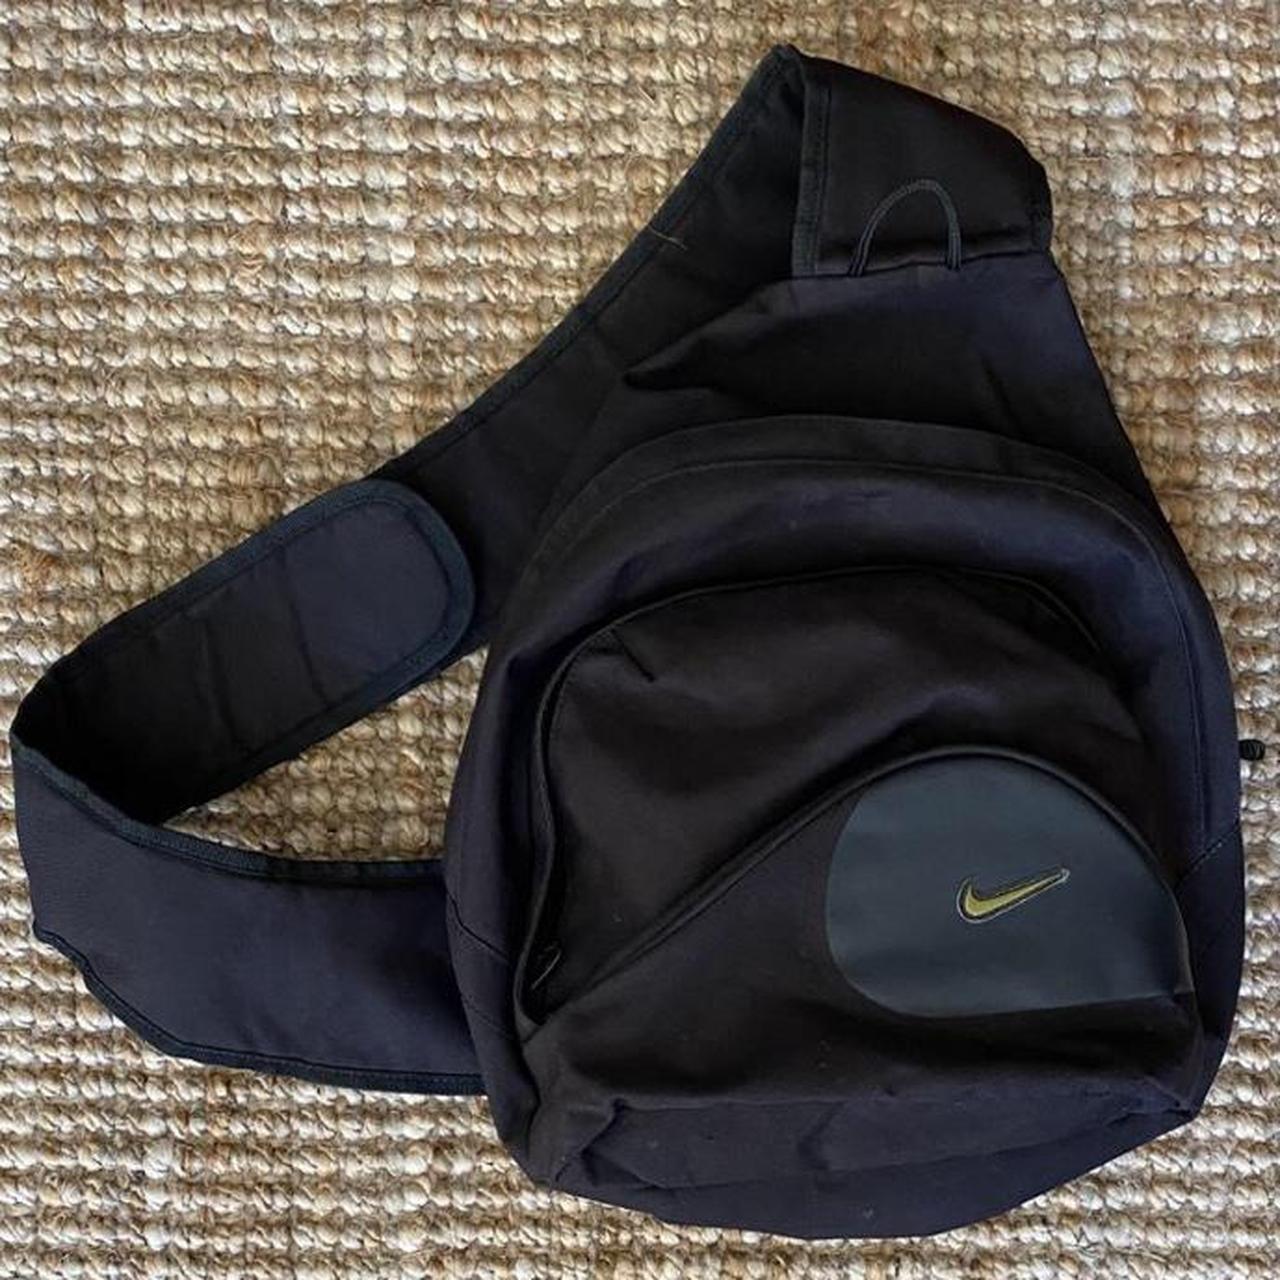 Nike strap on (bag), Vintage Black Swoosh Nike Sling...